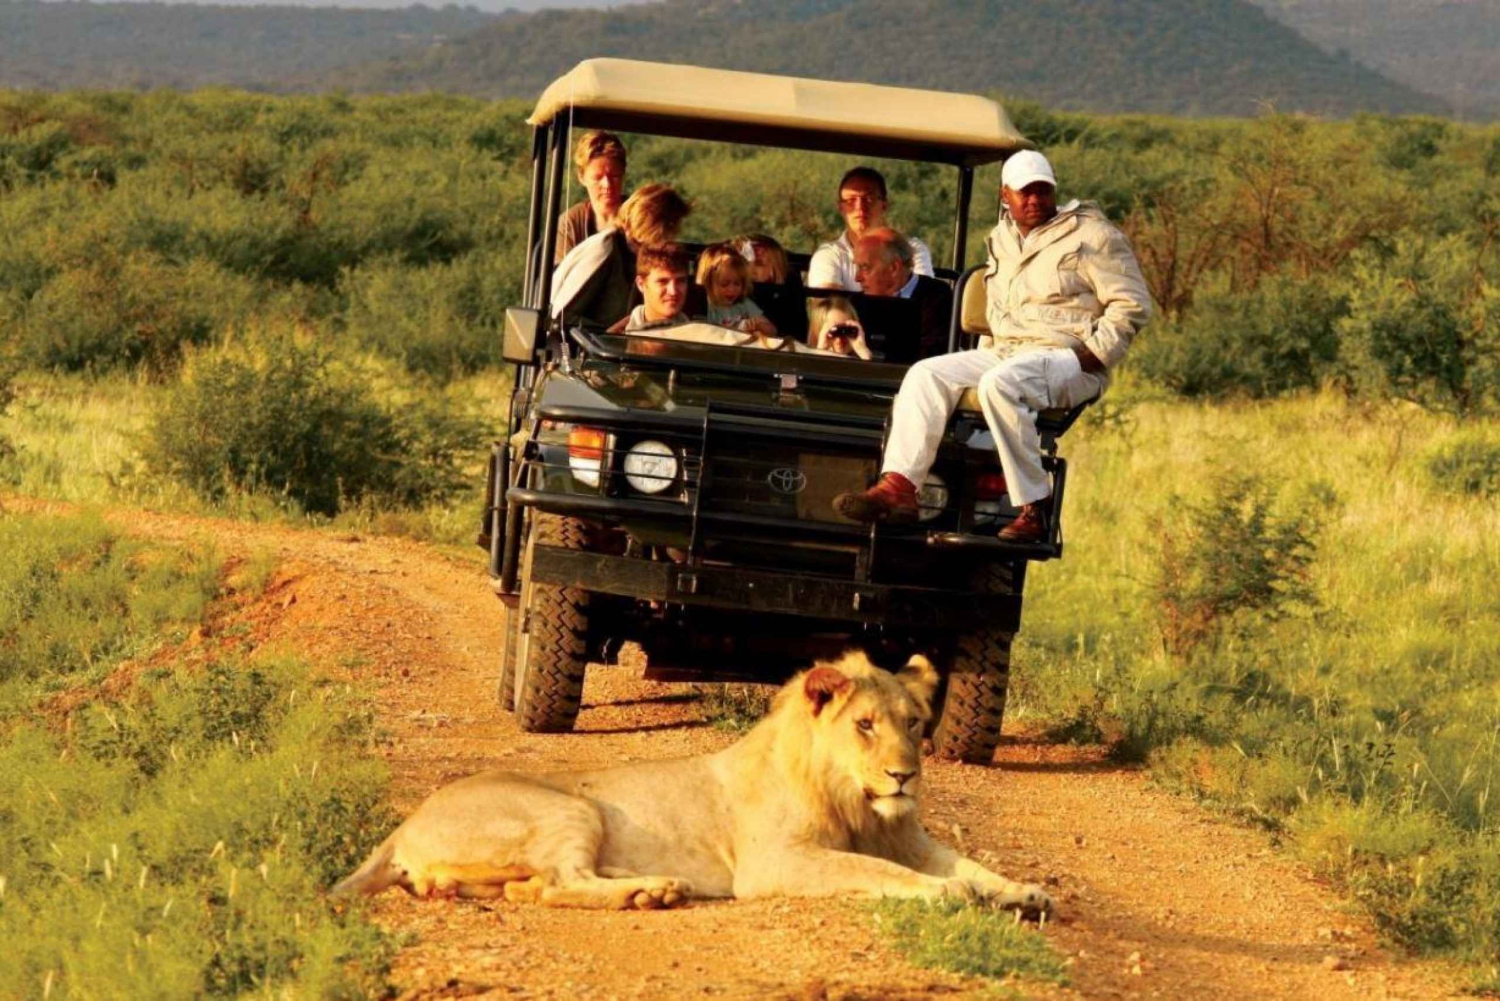 10 Day Private Safari : Johannesburg to Cape Town